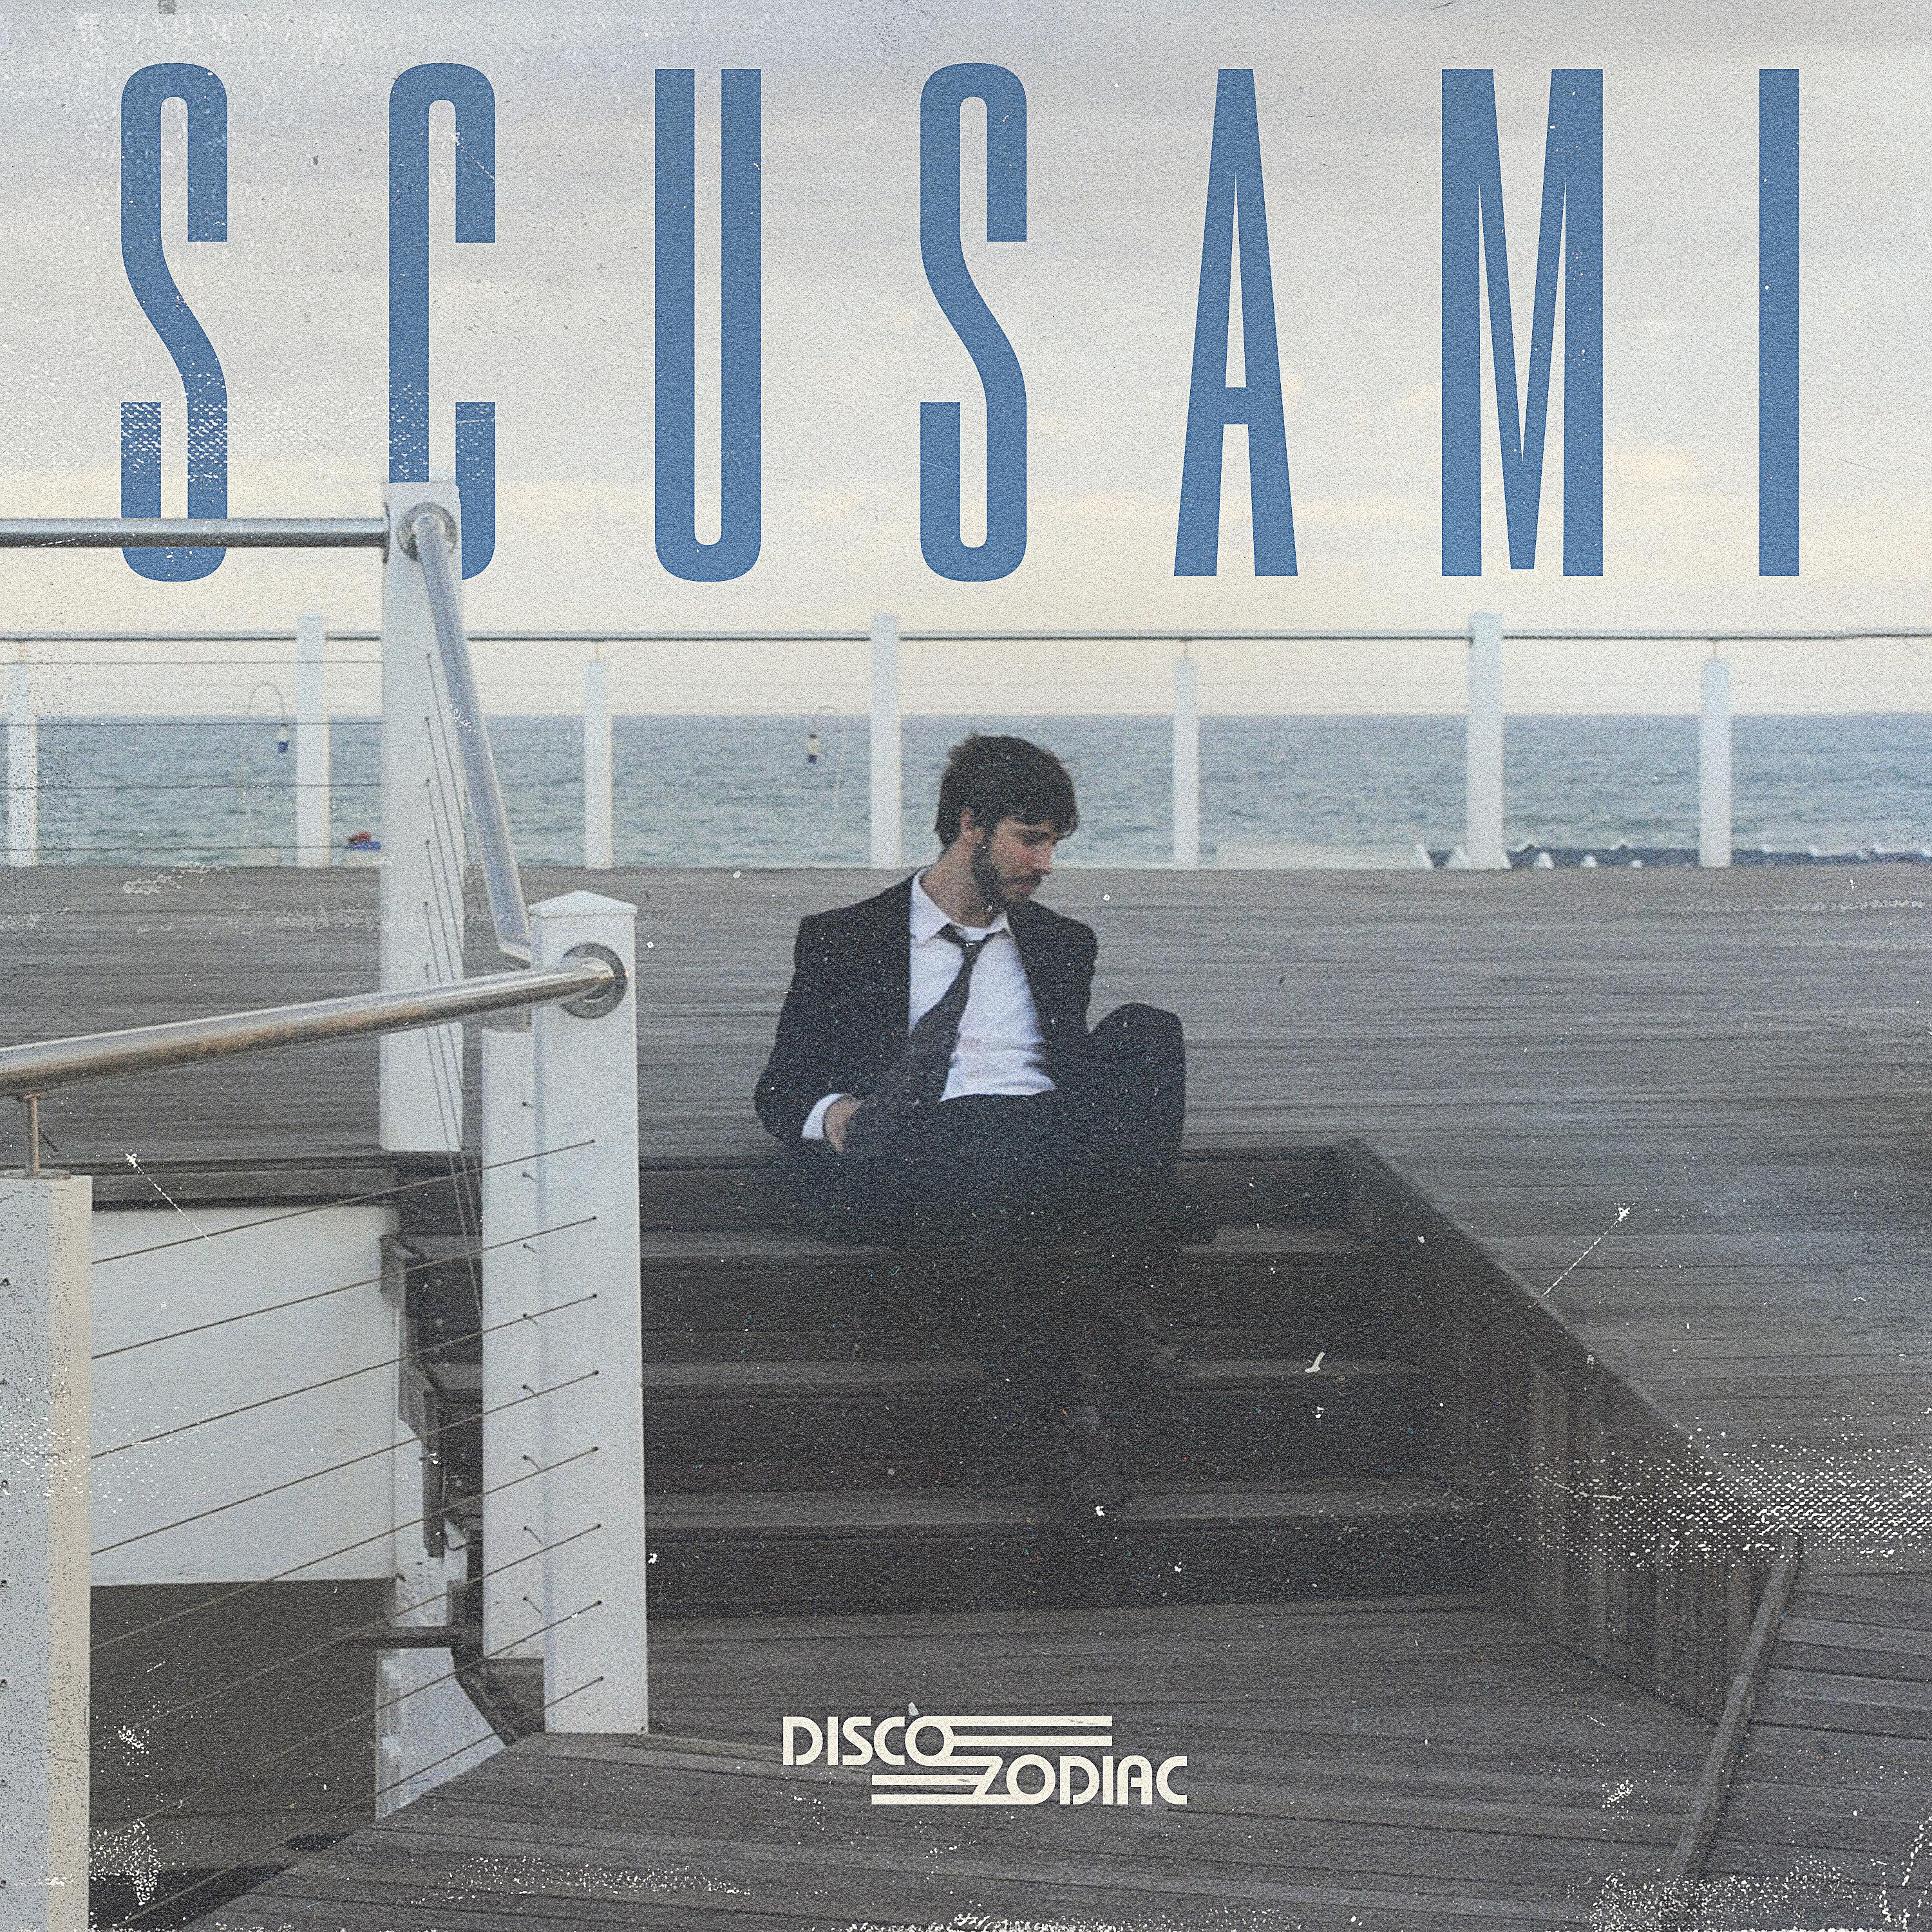 Постер альбома Scusami